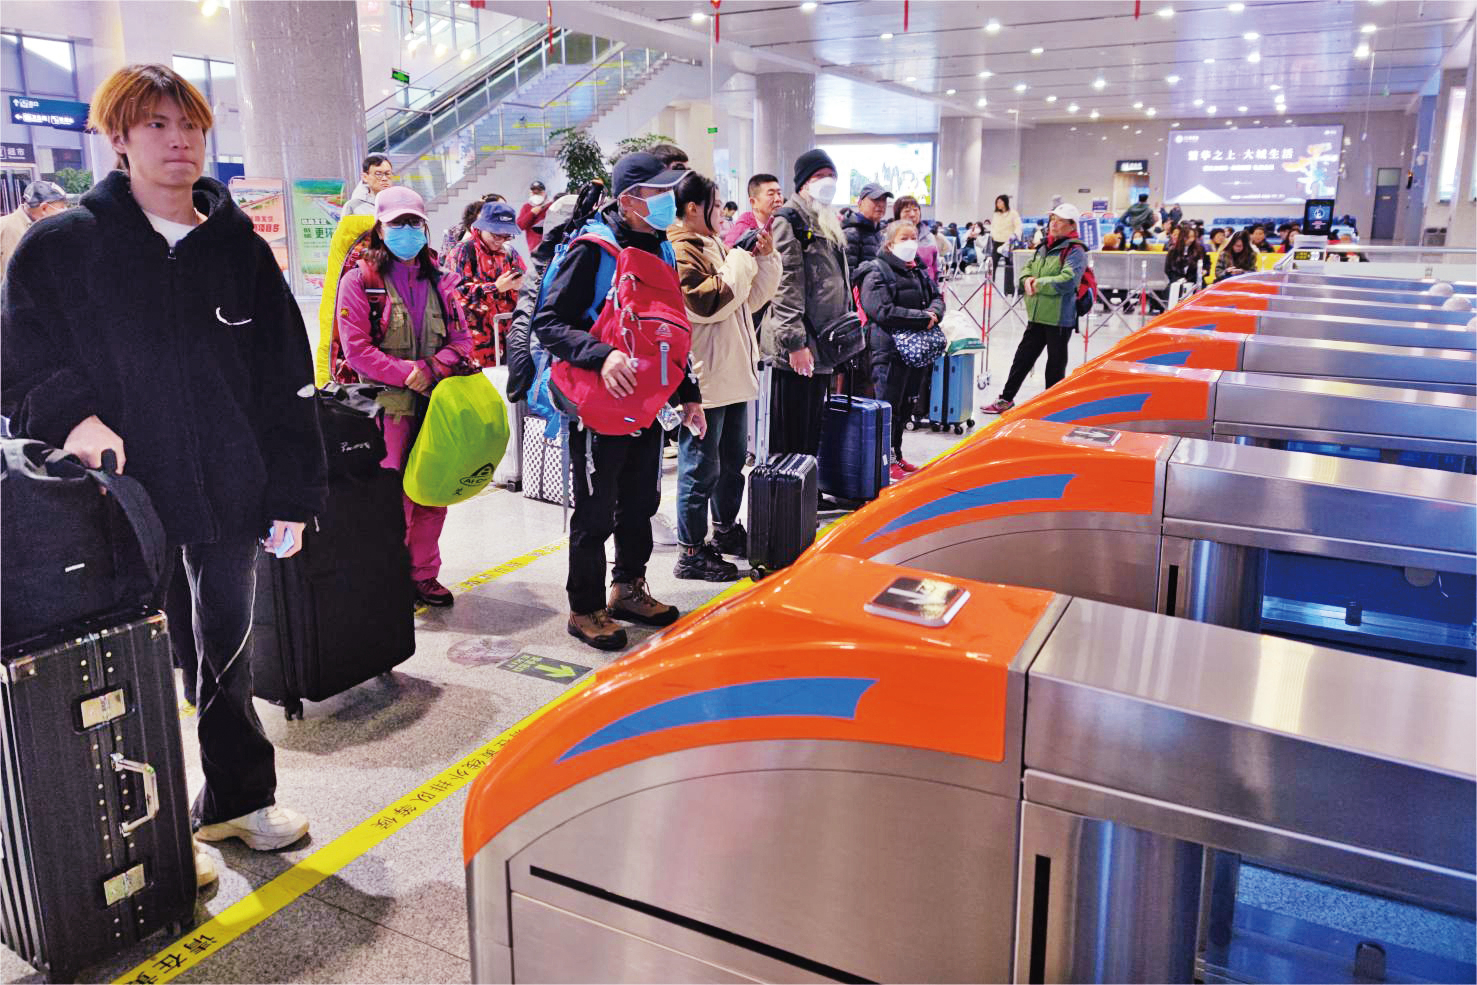 游客在丽江火车站等待进站搭乘动车.jpg